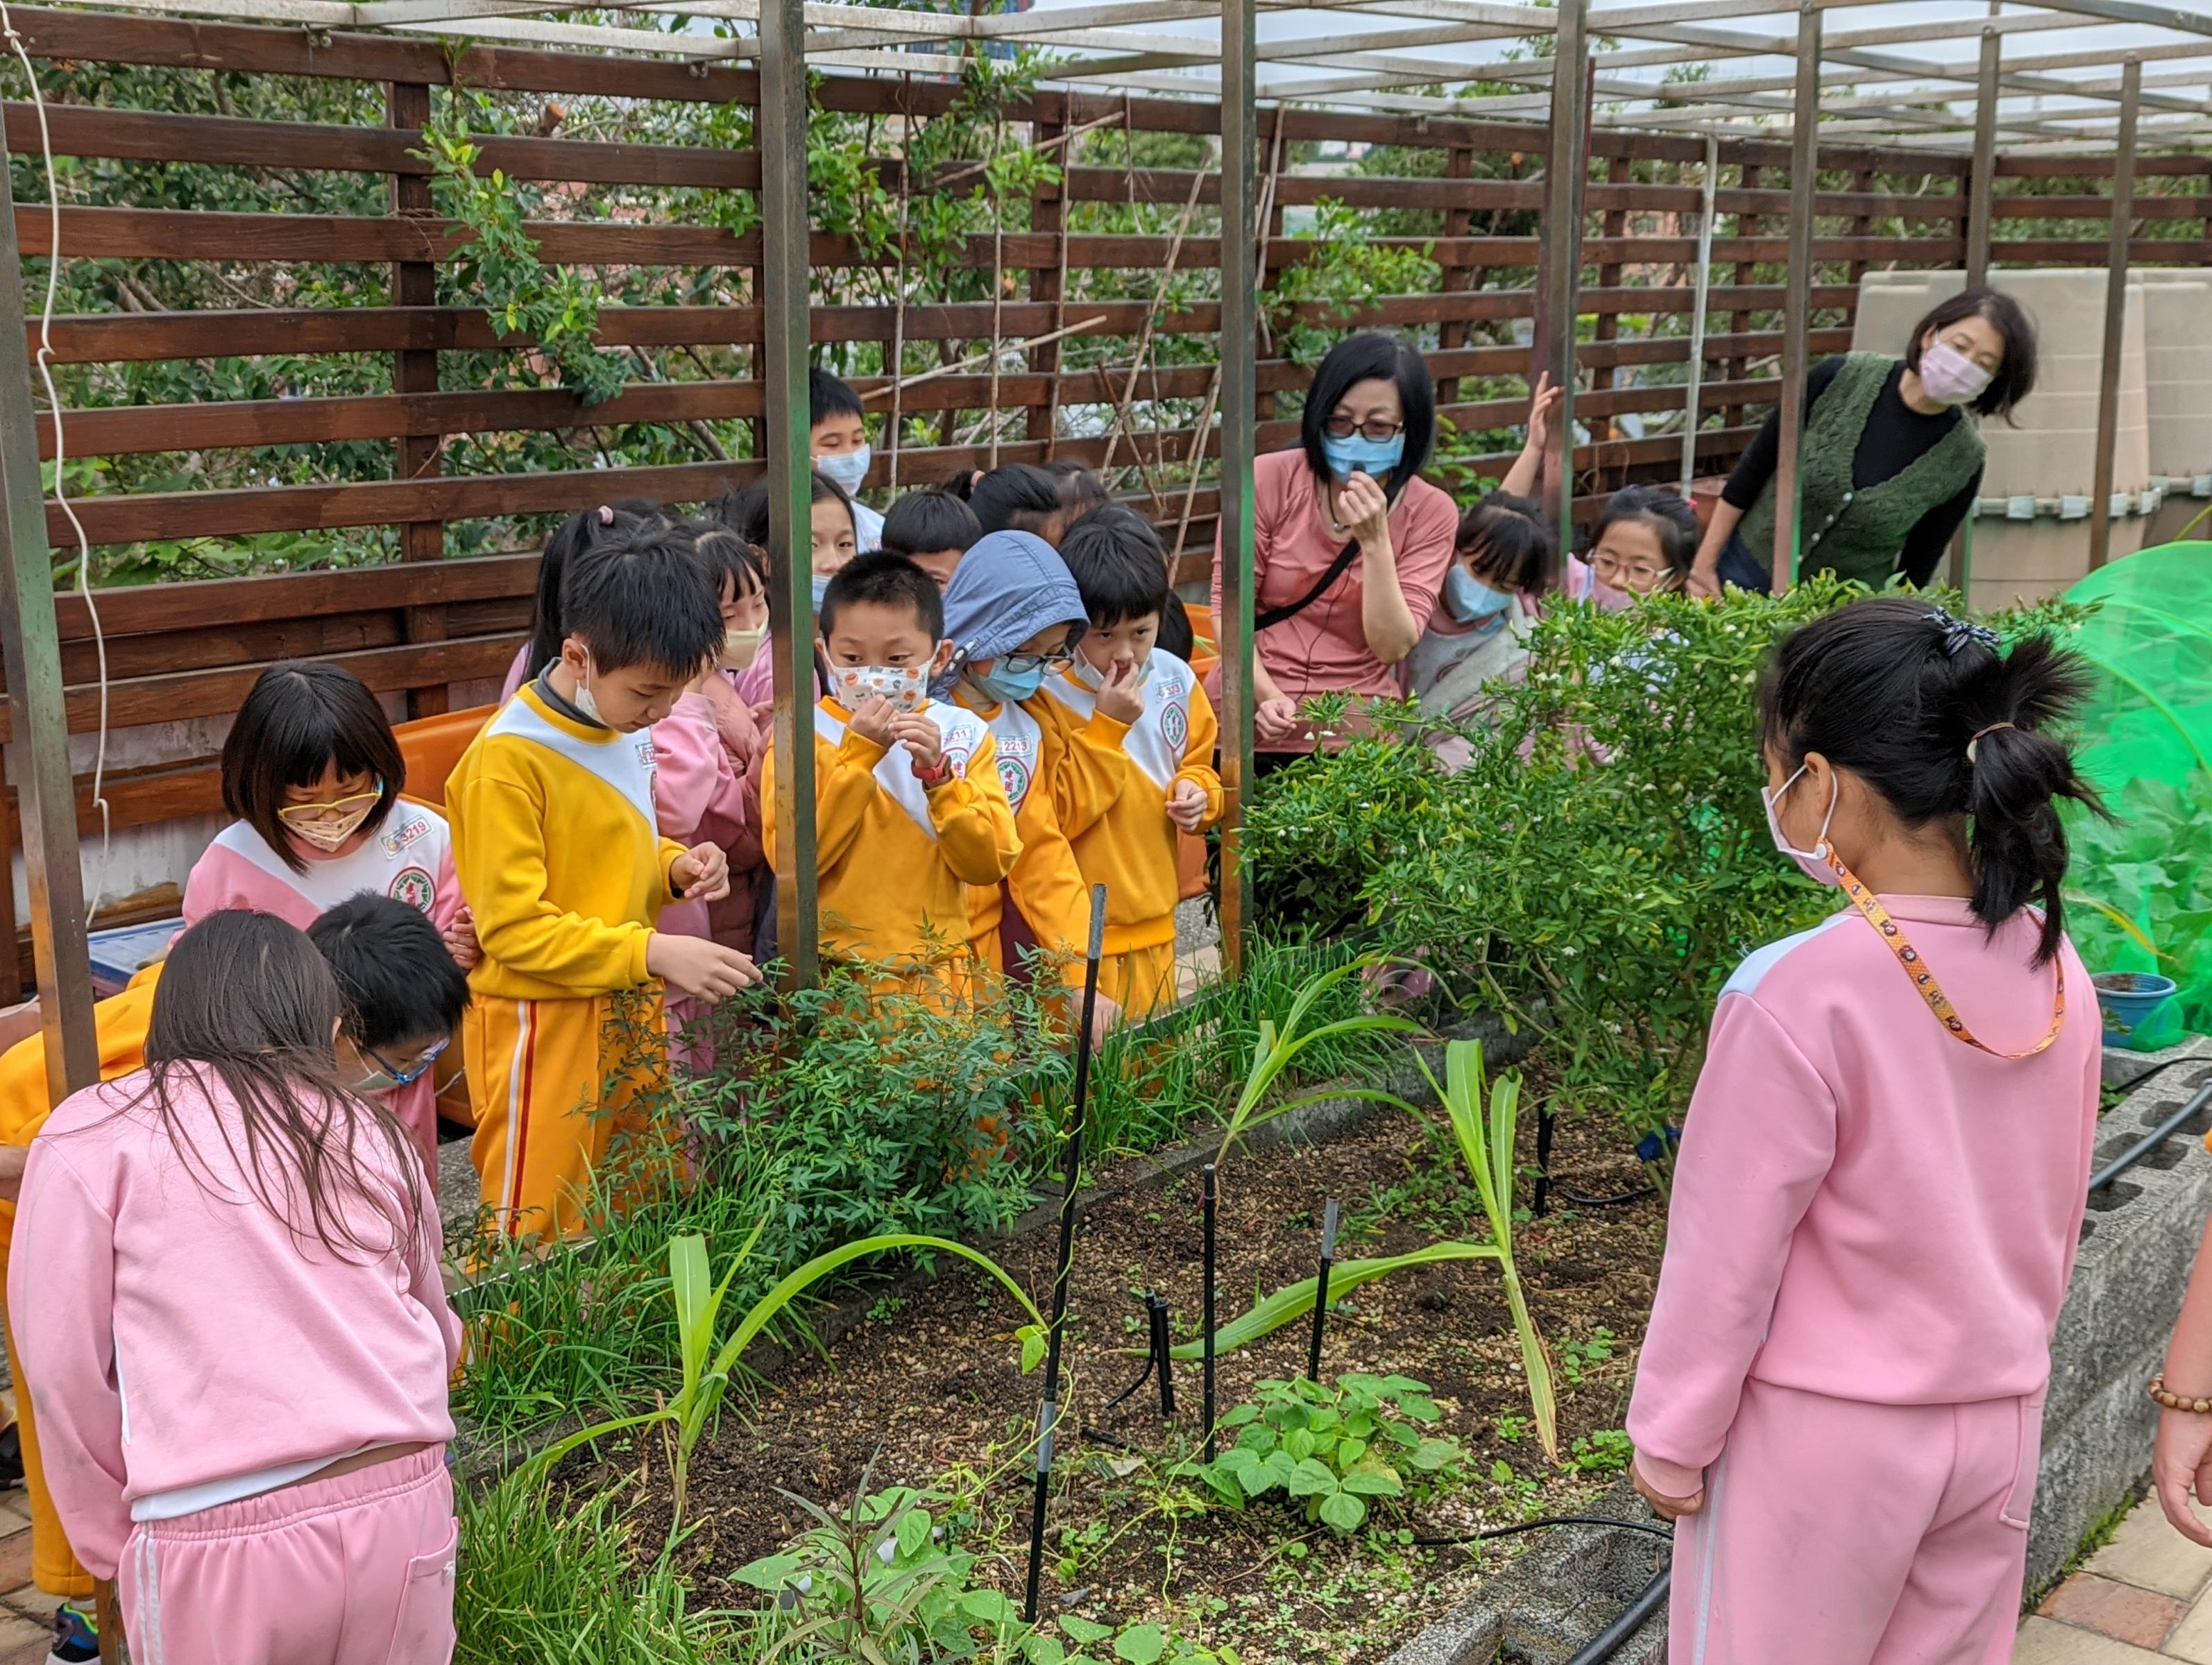 建國國小學童由老師帶至鶯歌國中空中菜園體驗食農教育